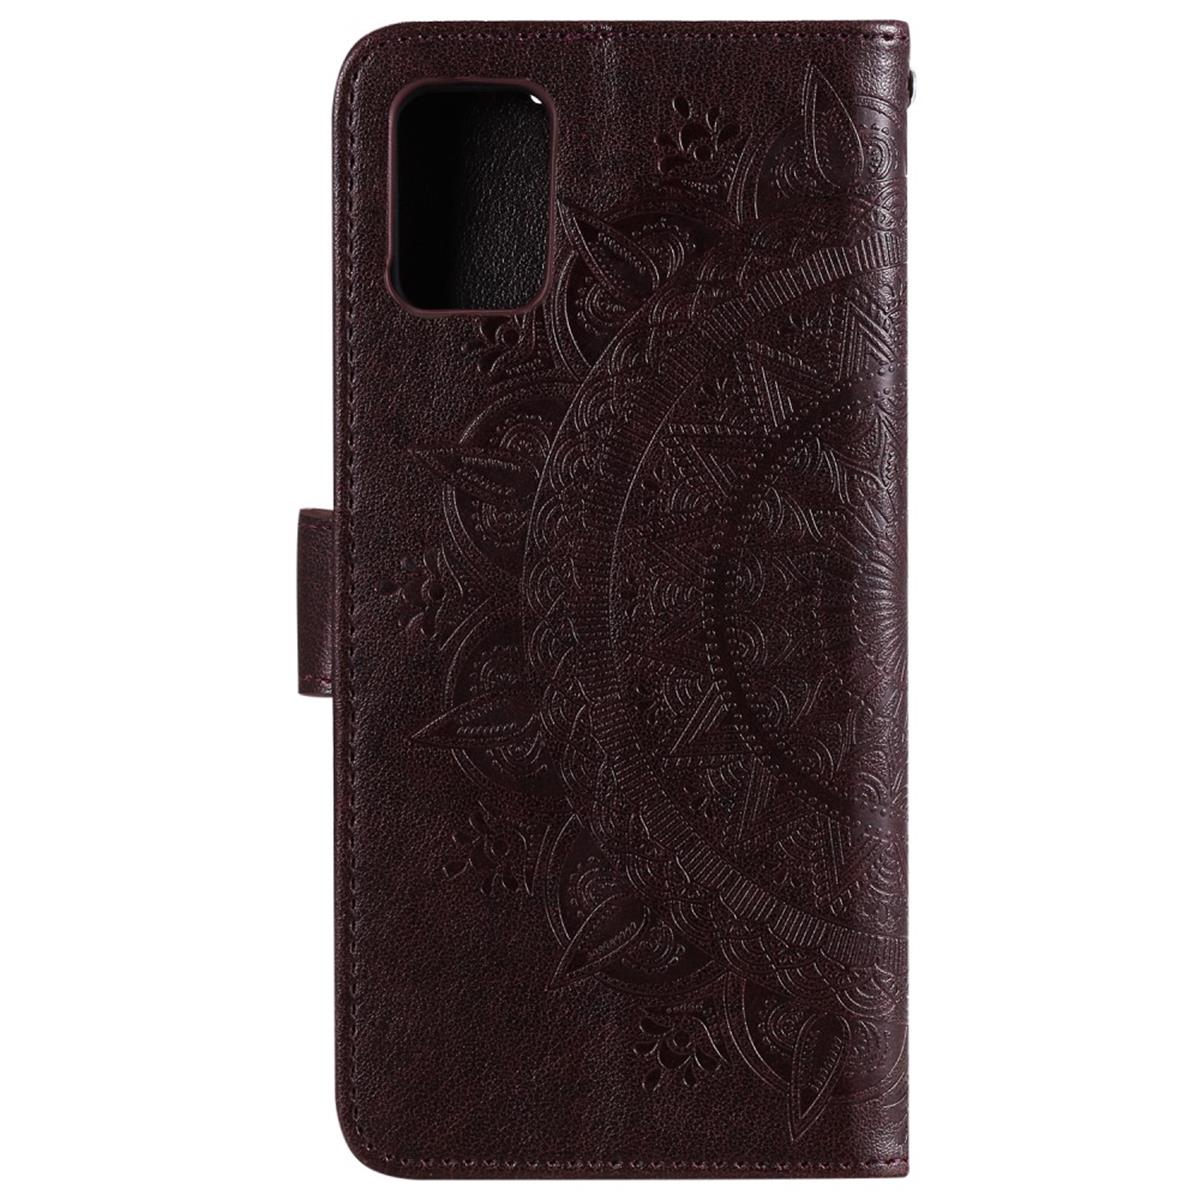 Hülle für Samsung Galaxy Note20 Handyhülle Flip Case Cover Tasche Etui Mandala Braun